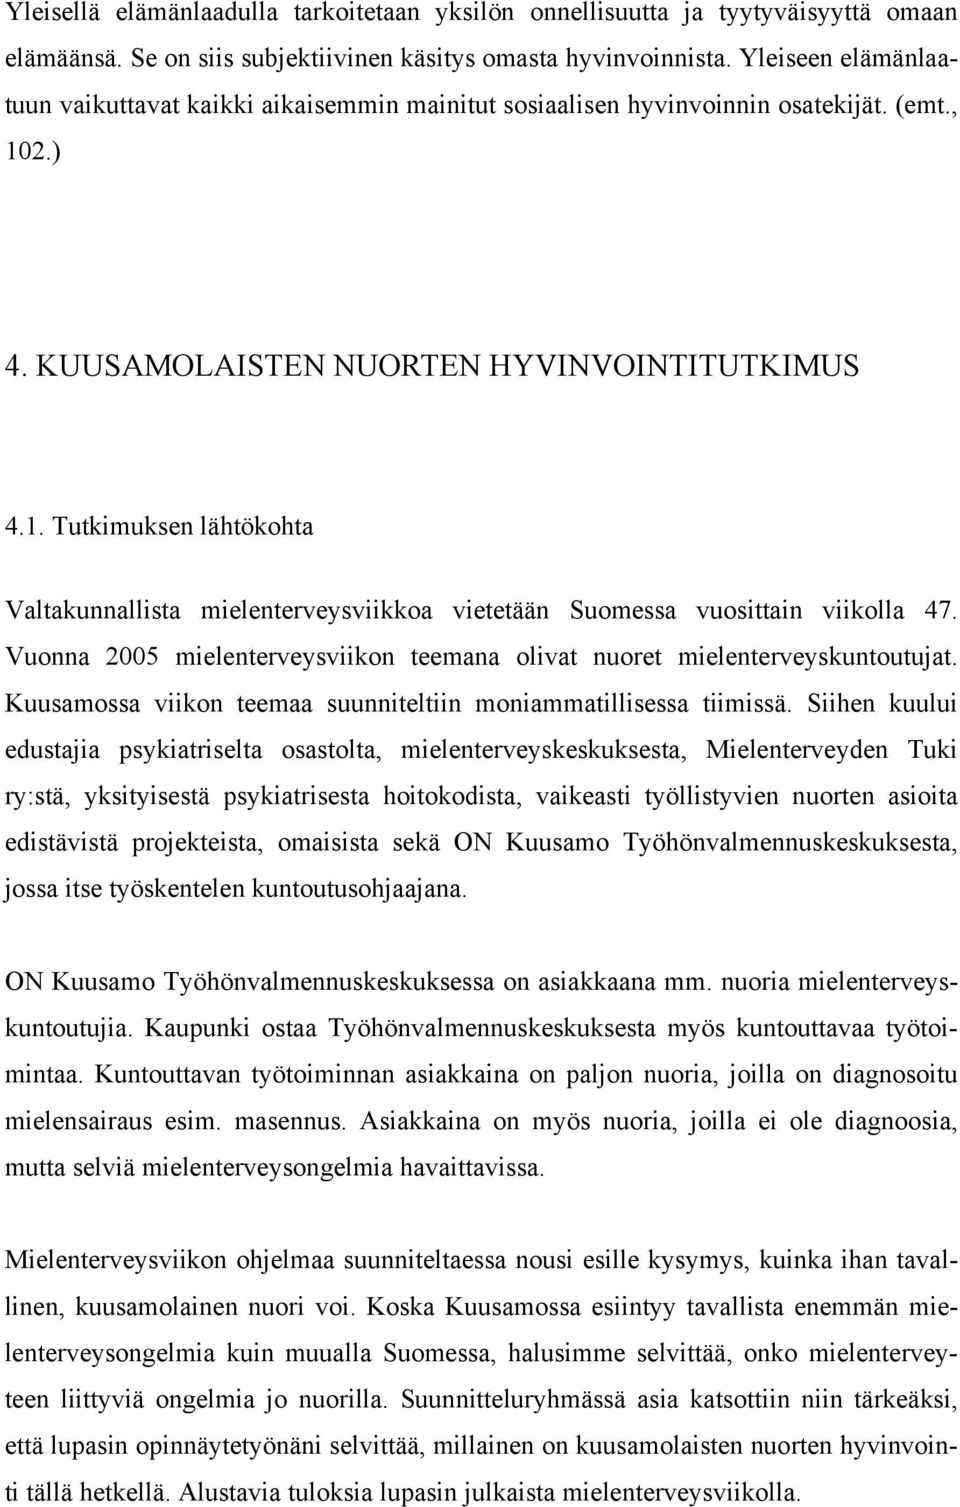 2.) 4. KUUSAMOLAISTEN NUORTEN HYVINVOINTITUTKIMUS 4.1. Tutkimuksen lähtökohta Valtakunnallista mielenterveysviikkoa vietetään Suomessa vuosittain viikolla 47.